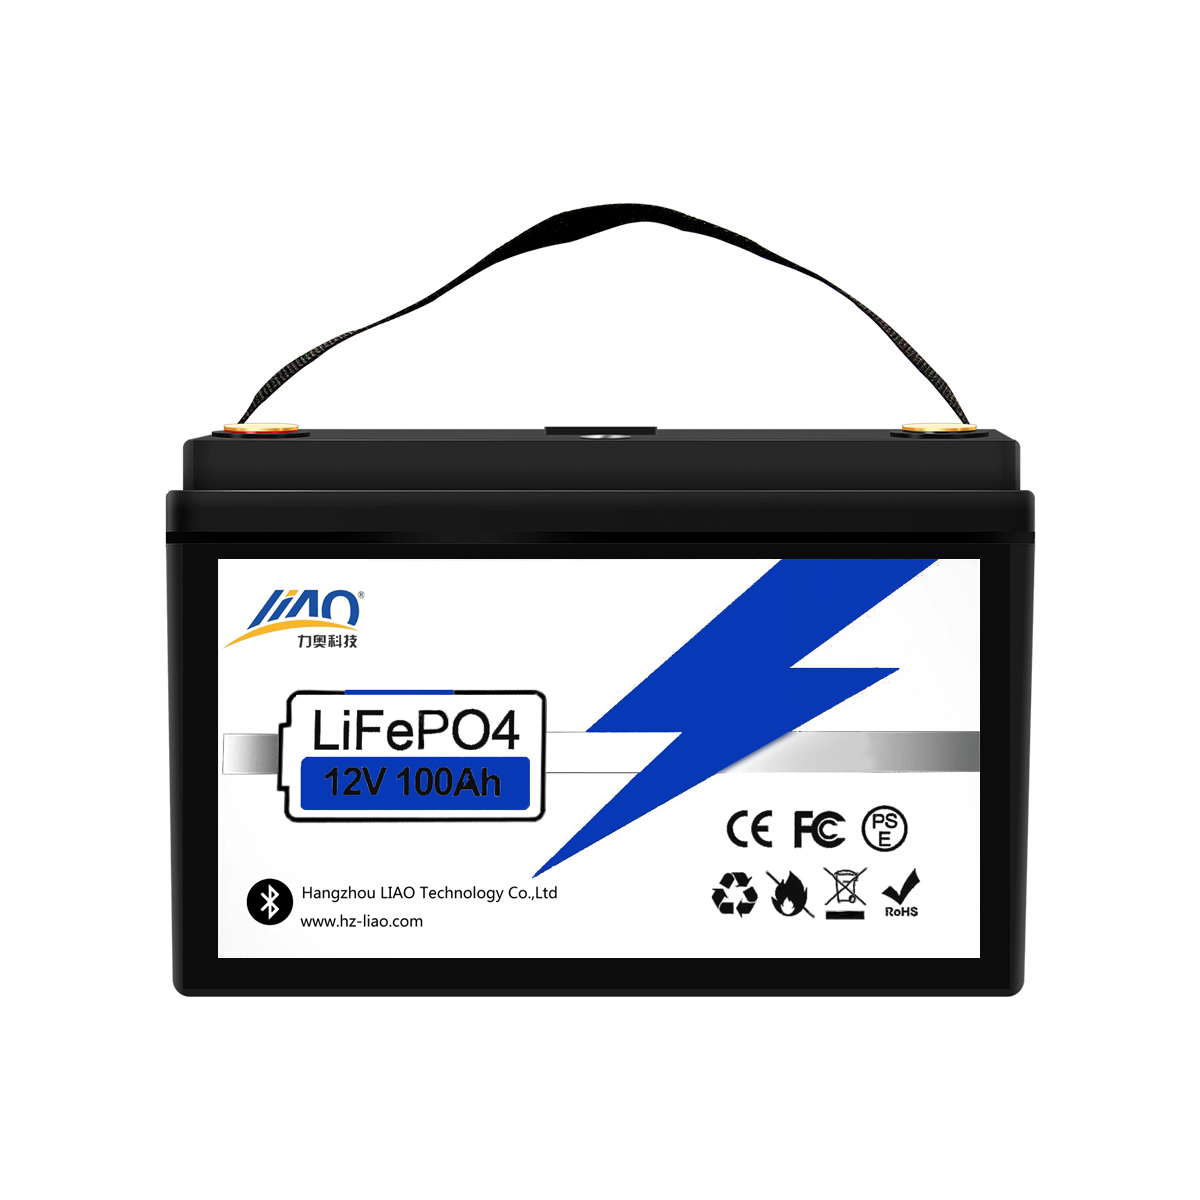 Le LiFePO4 12 V de LIAO est une alternative plus propre aux batteries au plomb